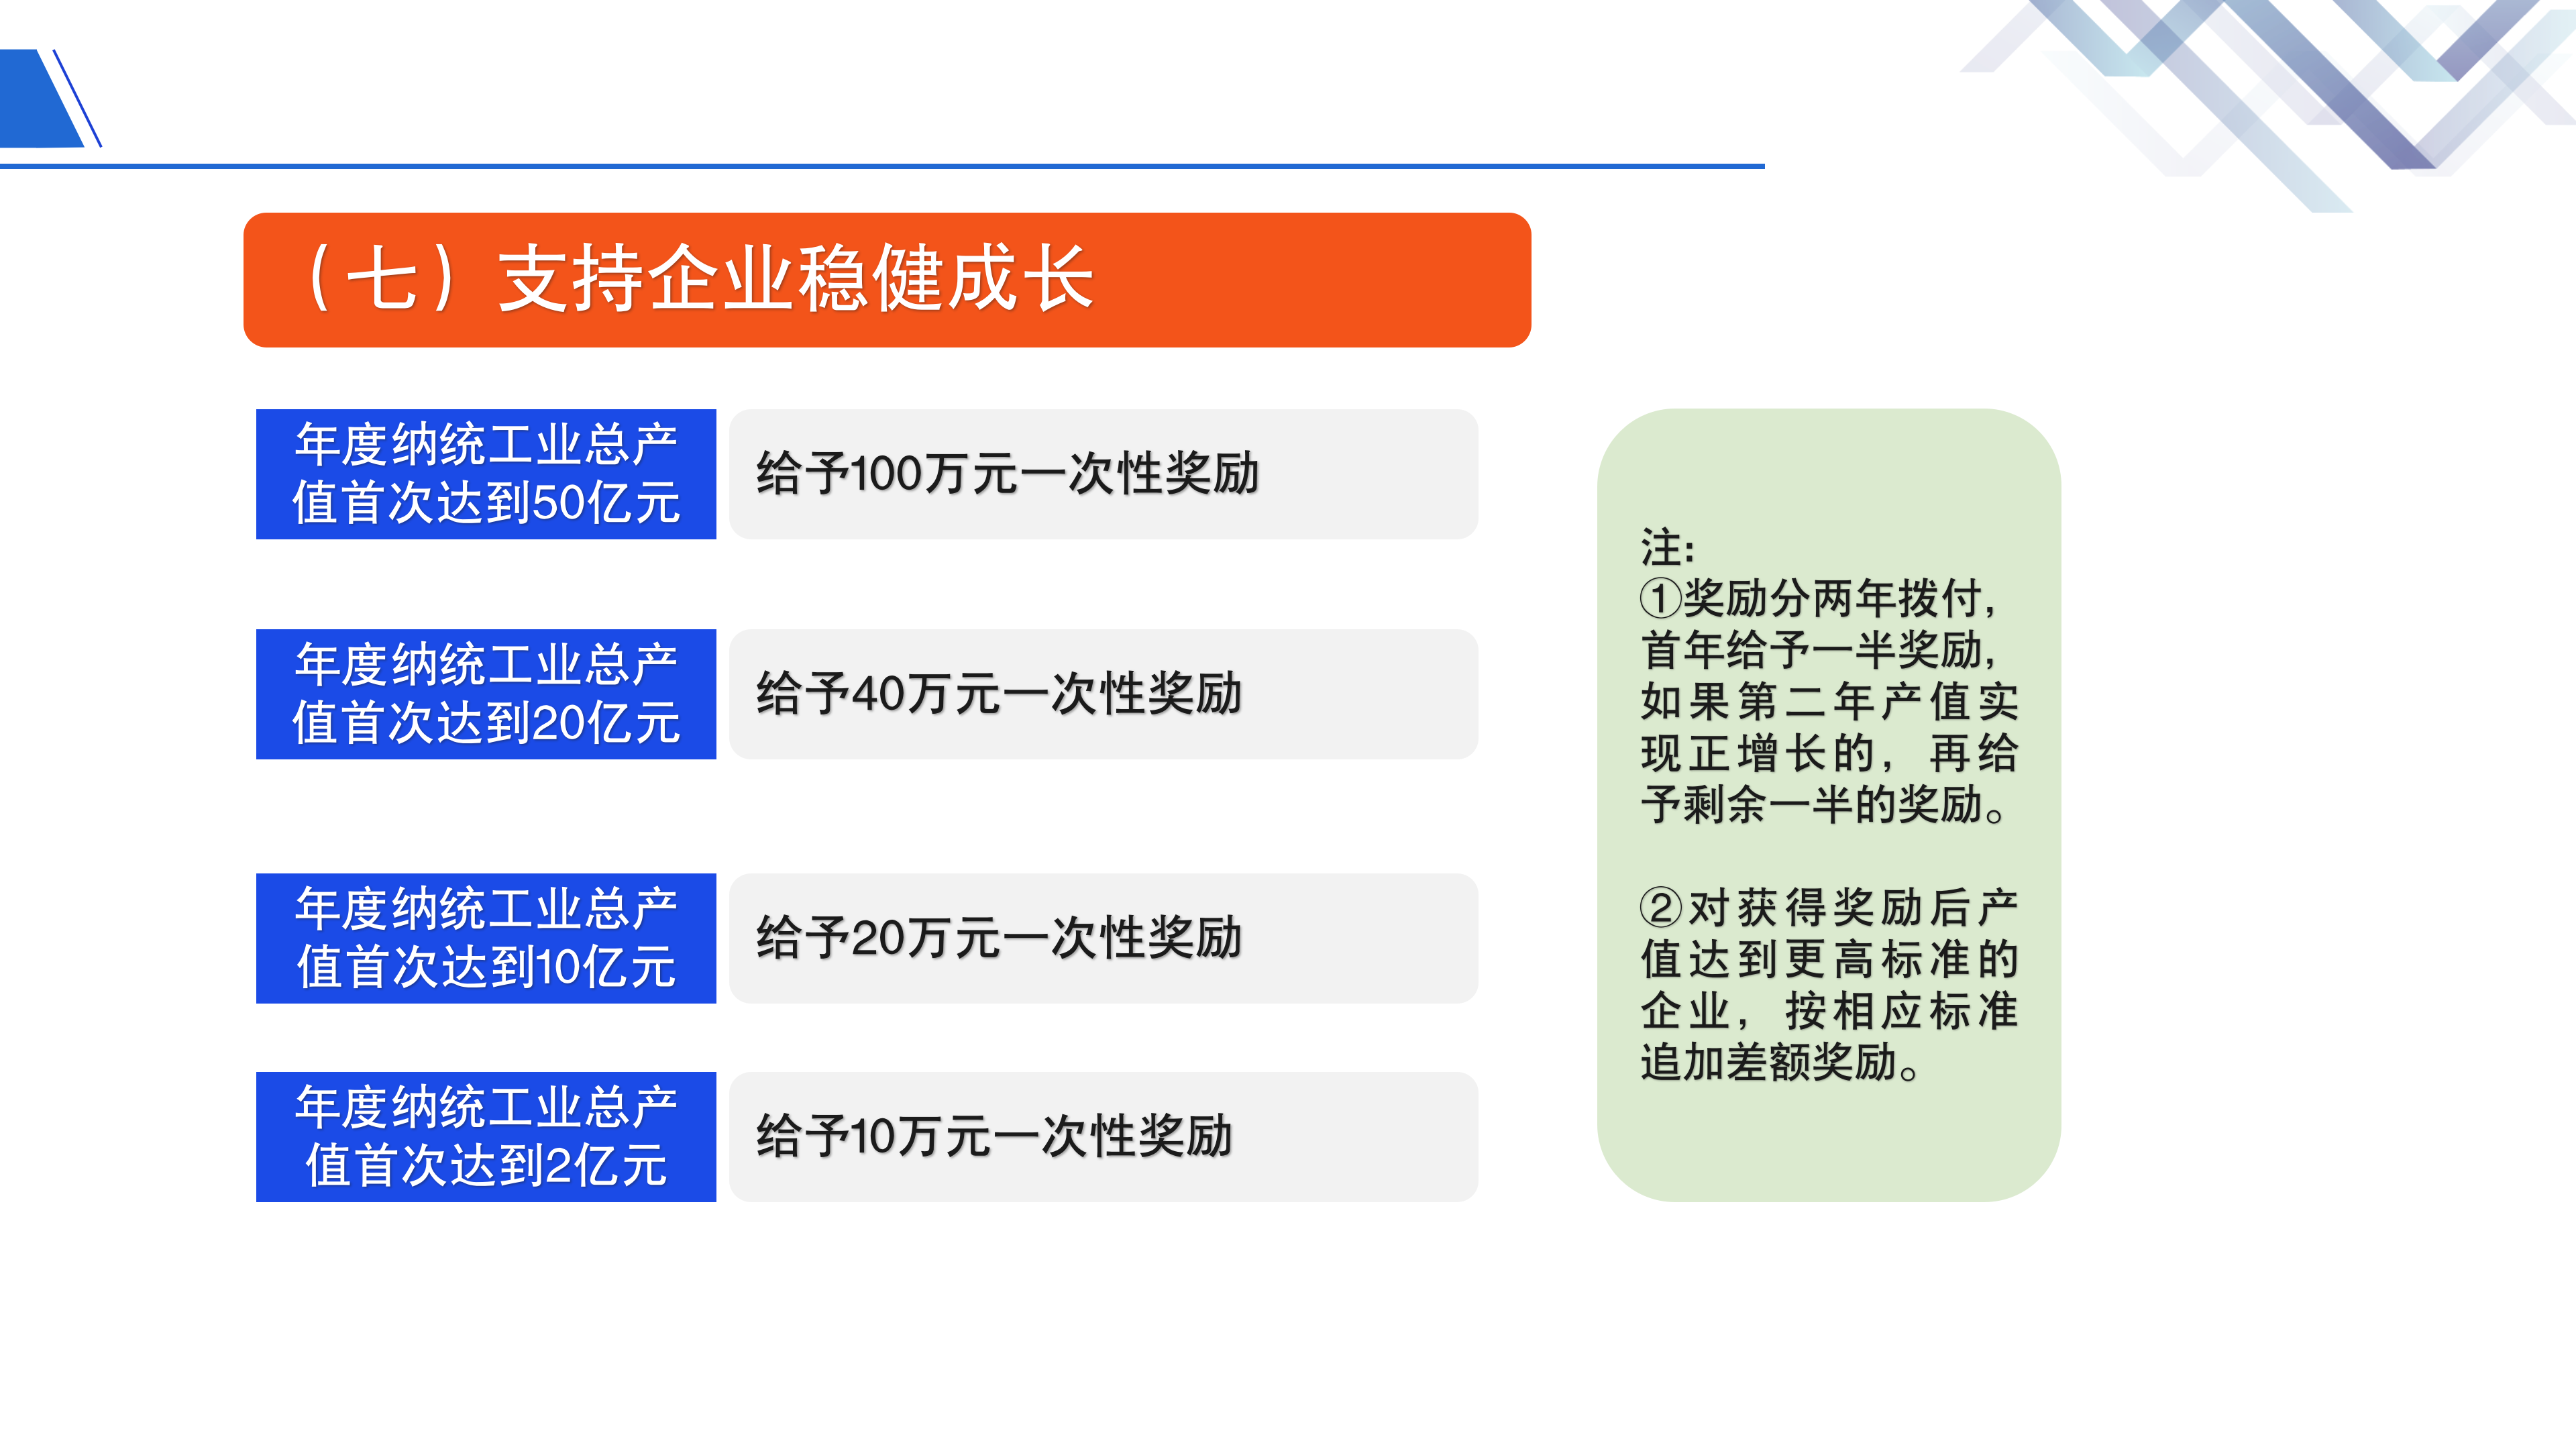 《深圳市大鹏新区关于促进制造业高质量发展的若干措施》政策解读_15.png